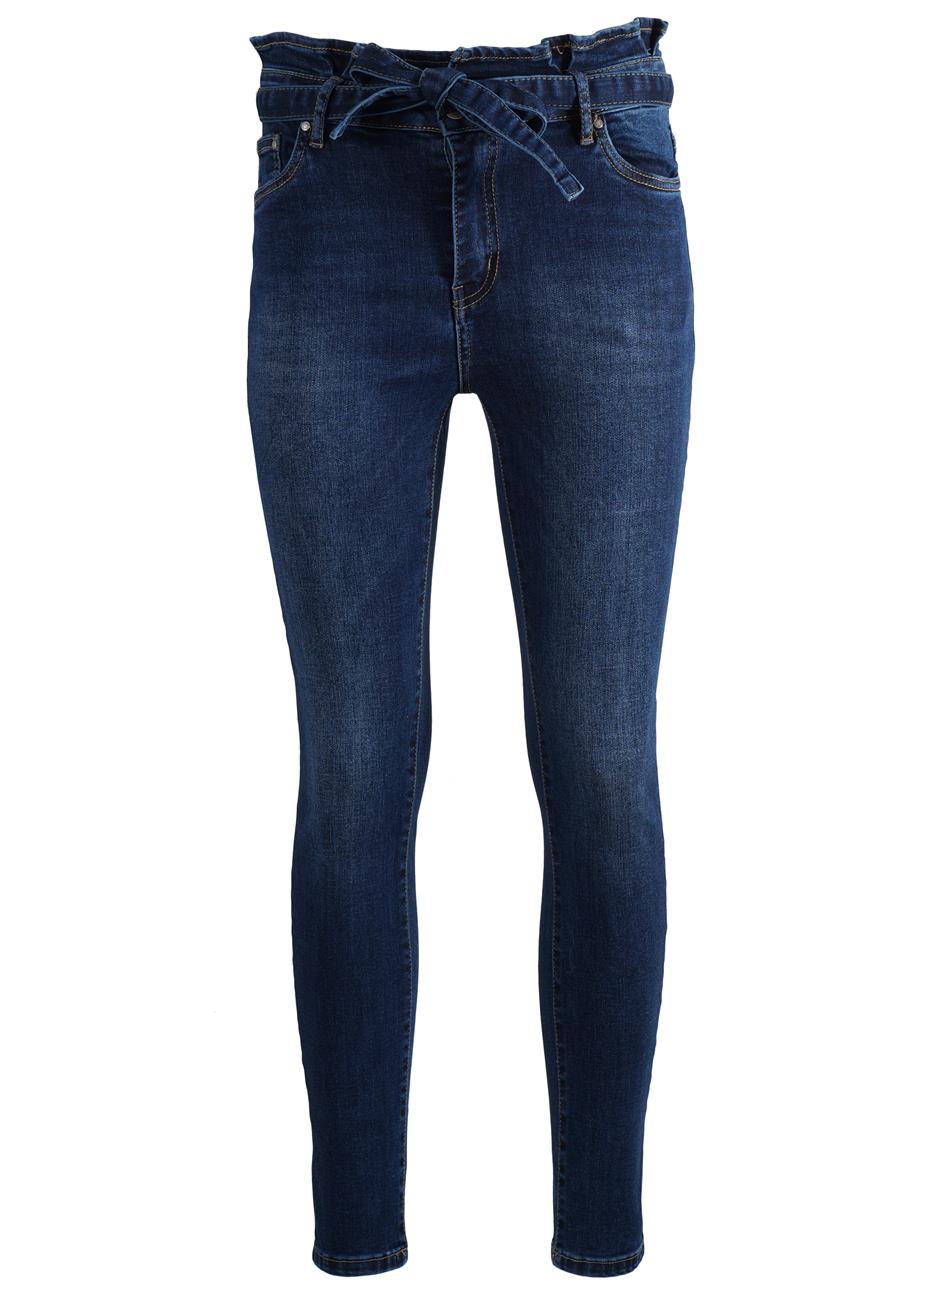 Γυναικείο παντελόνι jean σε γραμμή MOM.Denim collection